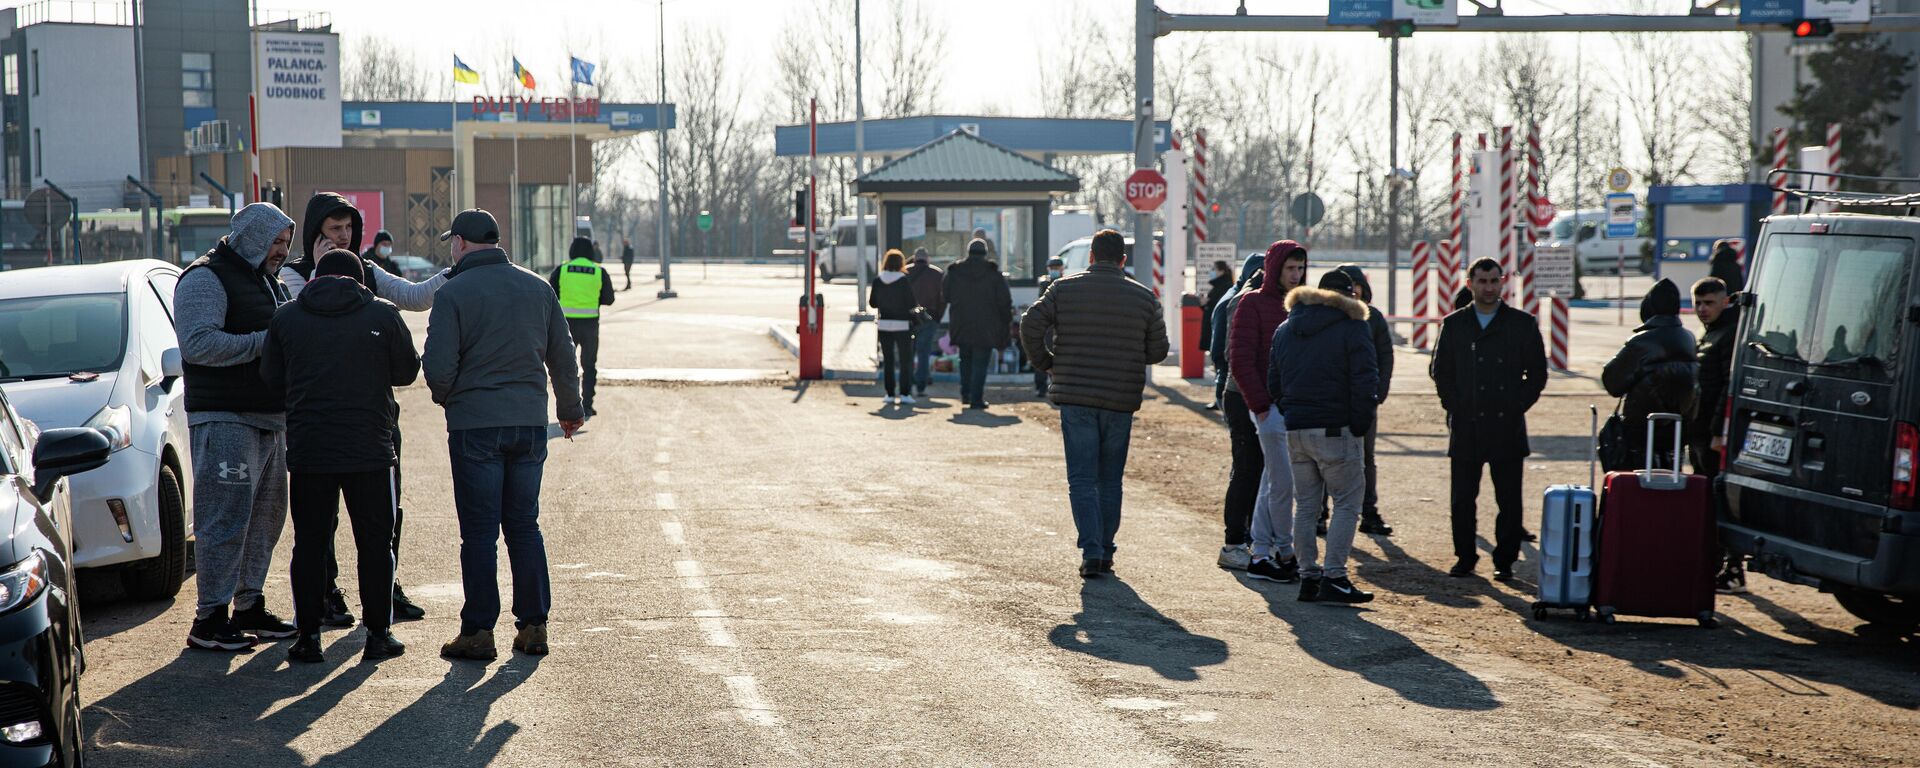 КПП Паланка, через который в Молдову едут украинские беженцы - Sputnik Молдова, 1920, 25.02.2022